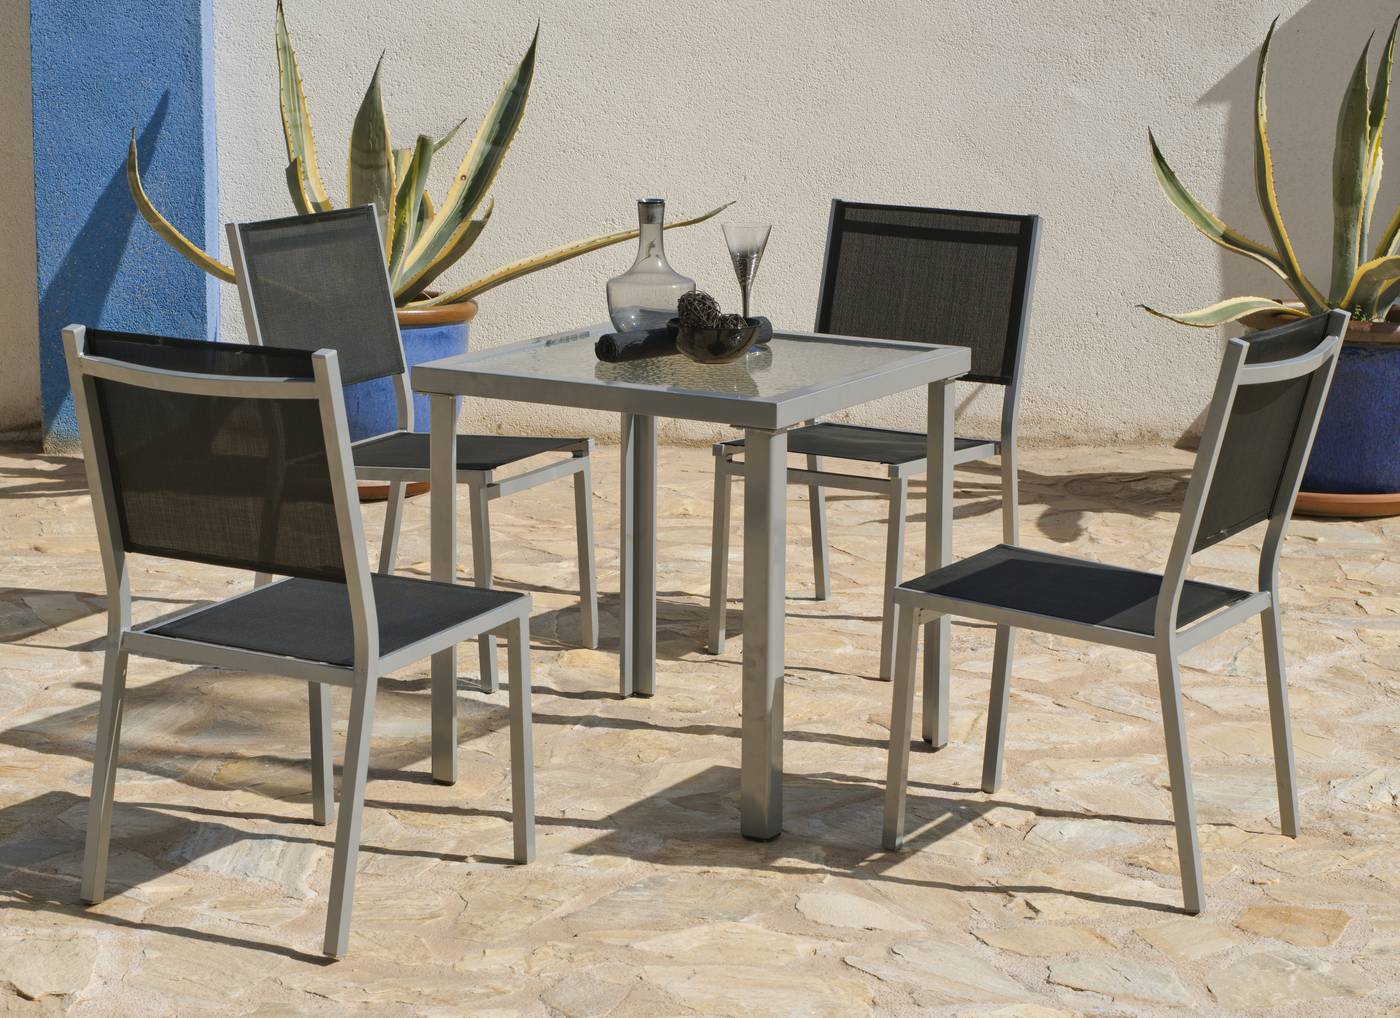 Conjunto de aluminio color plata: mesa cuadrada de 70 cm. + 4 sillas de alumnio y textilen